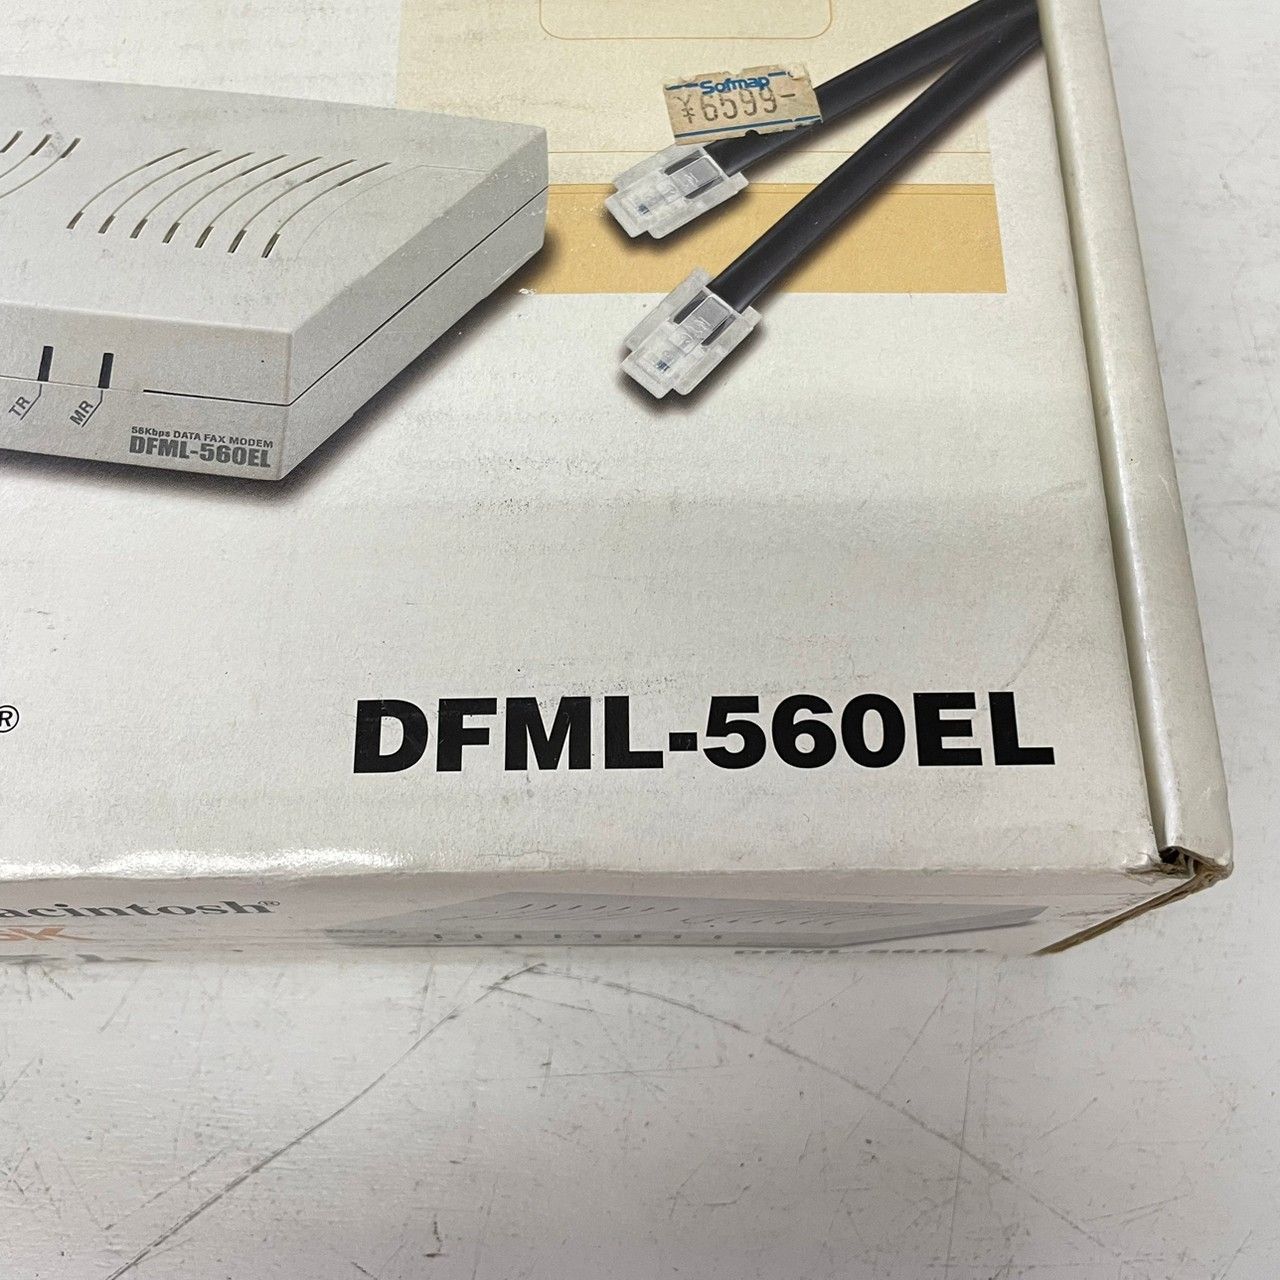 インターネットモデム DFML-560EL I-O DATA 3952 - リユースショップ